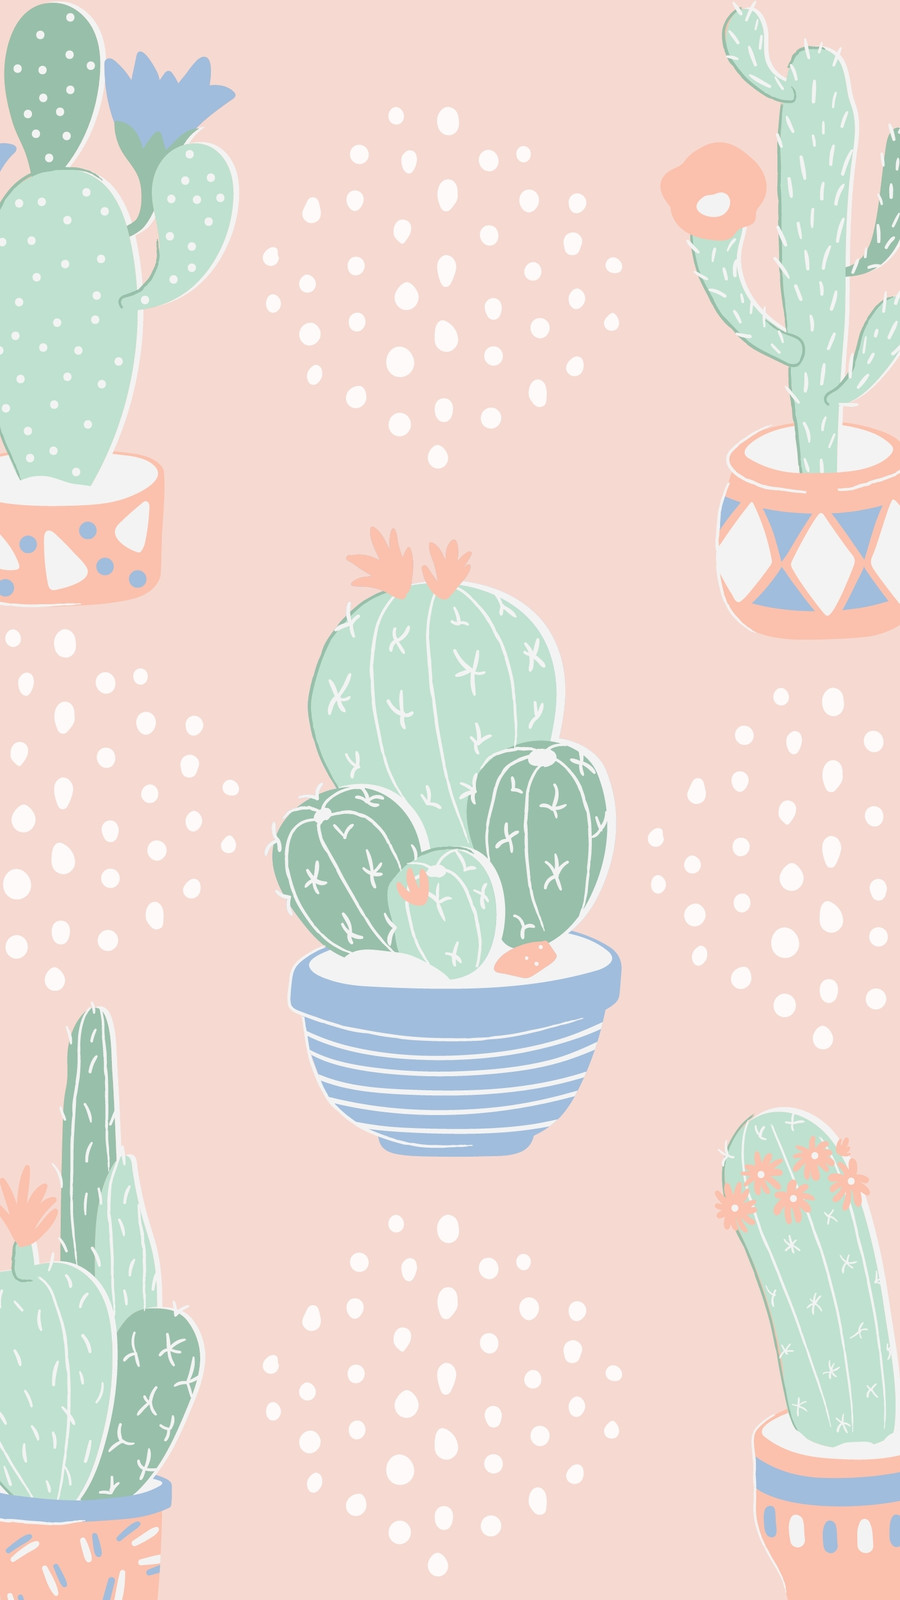 Plantillas cactus - Gratis y editables - Canva